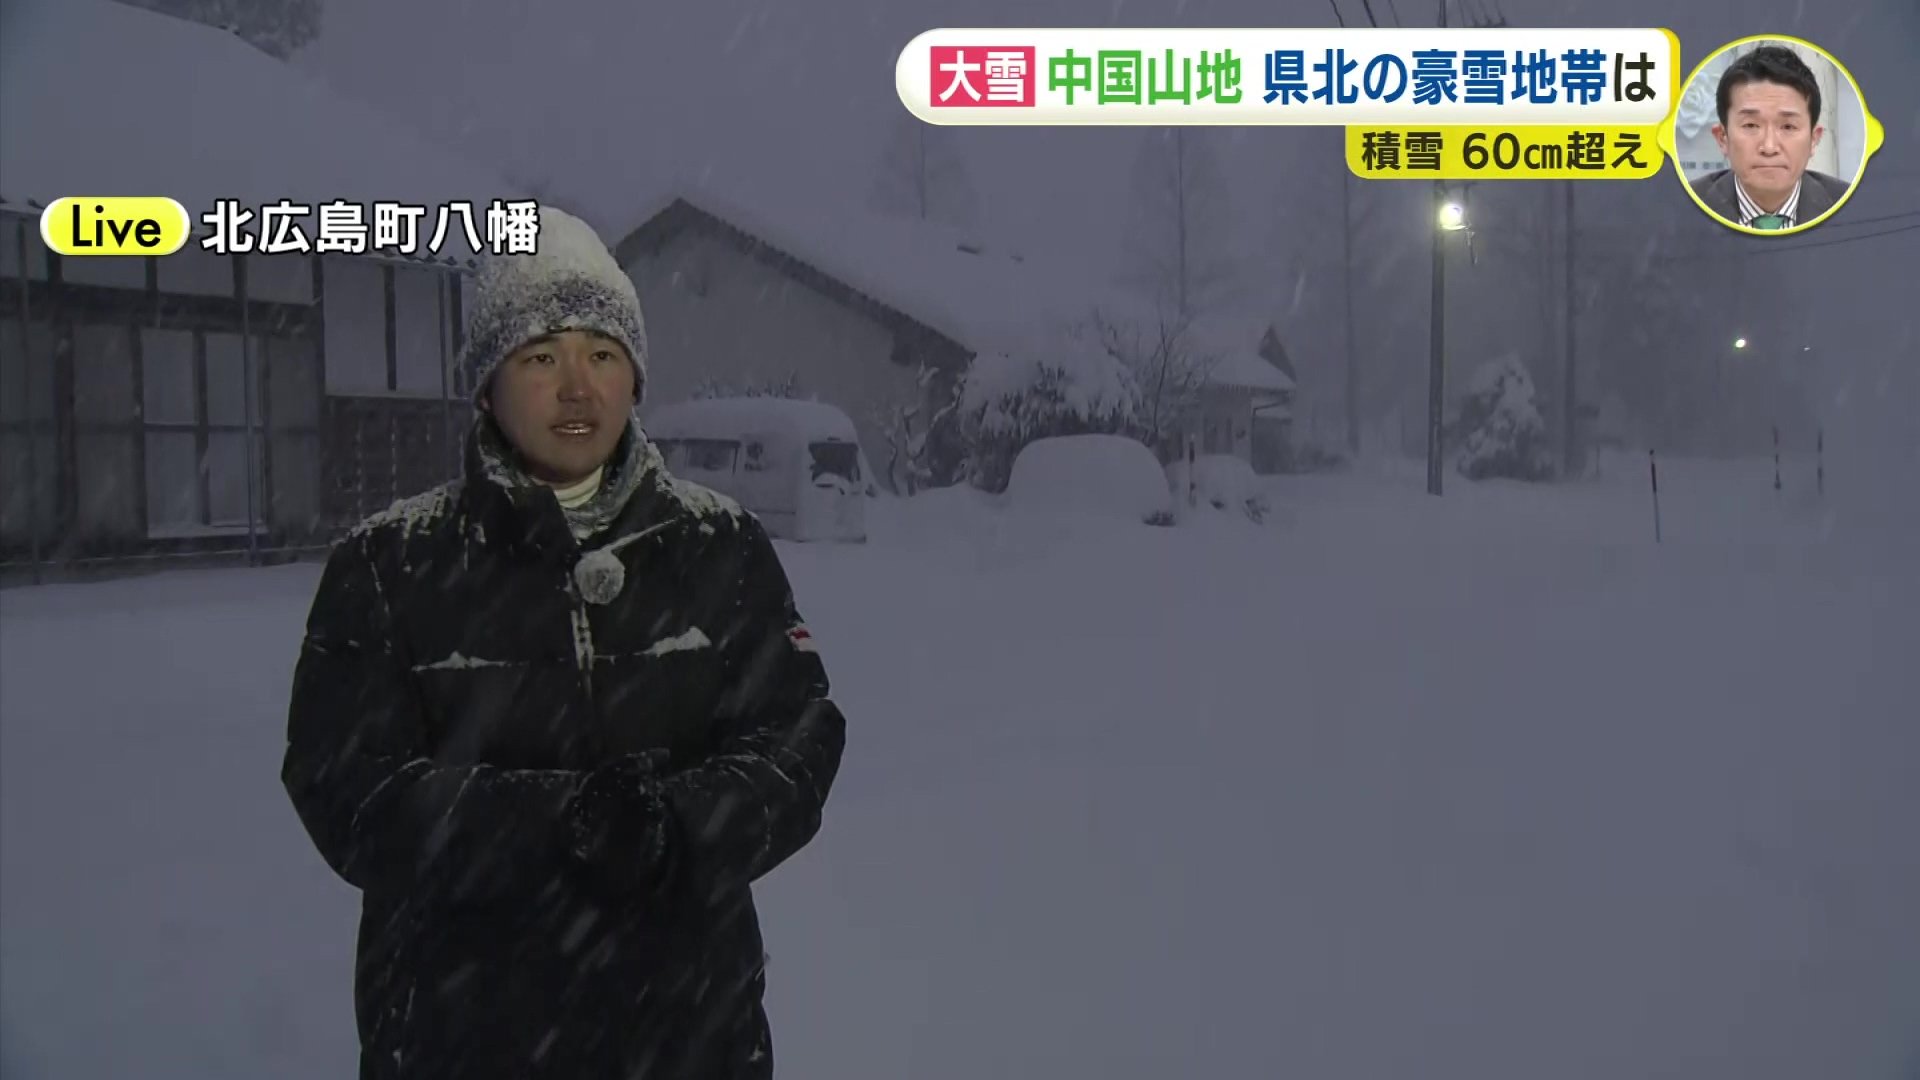 積雪64センチ 中国山地の豪雪地帯 広島・北広島町八幡から気象予報士が 